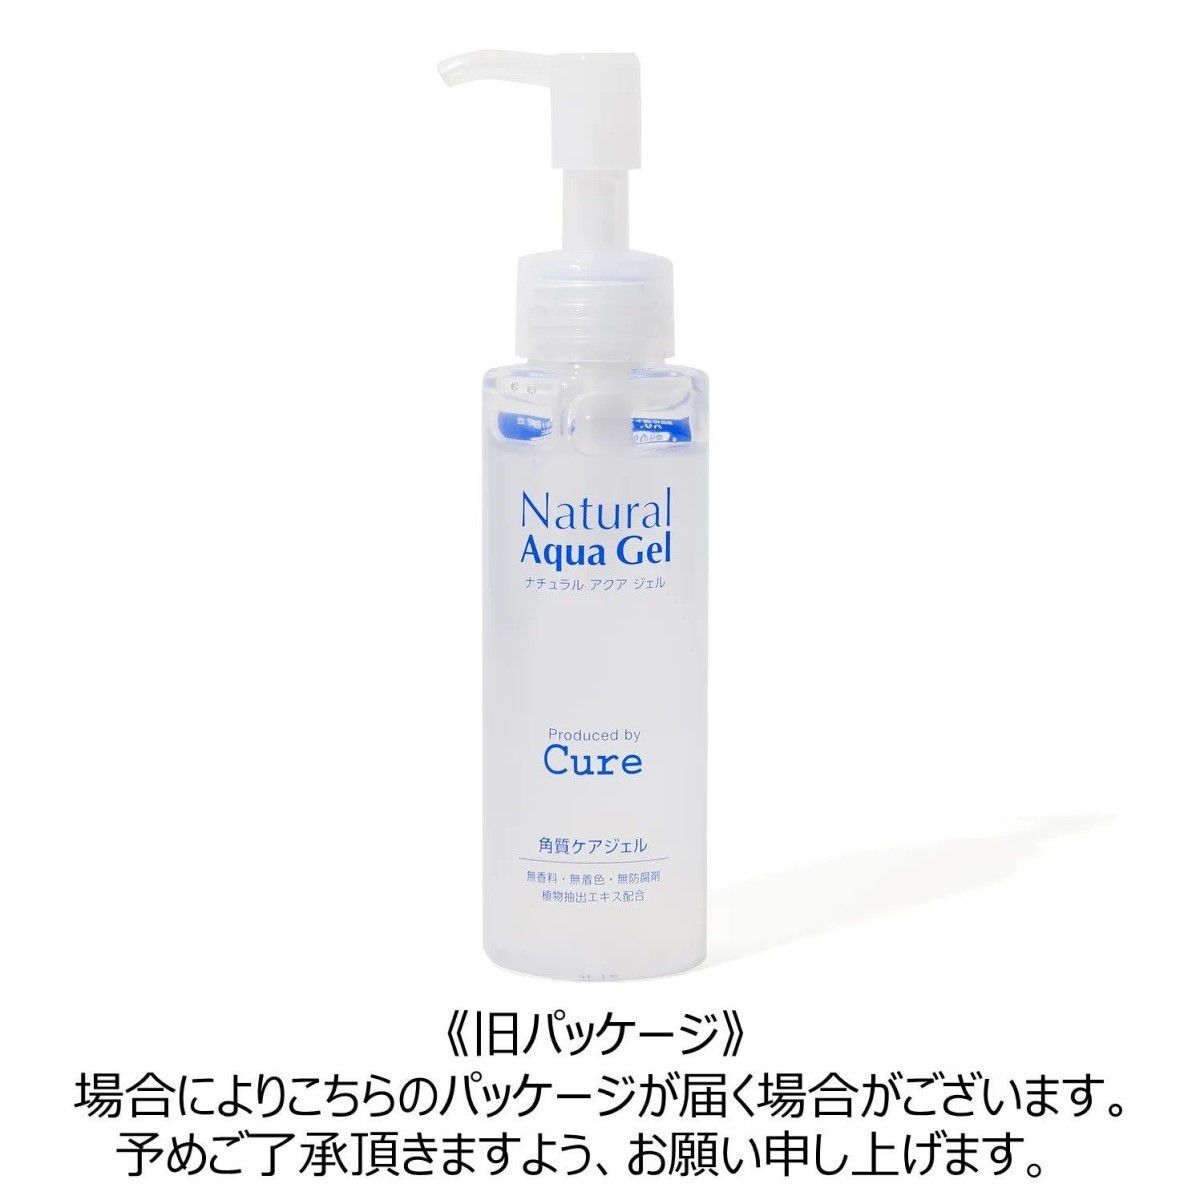 Cure】ナチュラルアクアジェル 100gの通販【使用感・口コミ付】 | NOIN(ノイン)